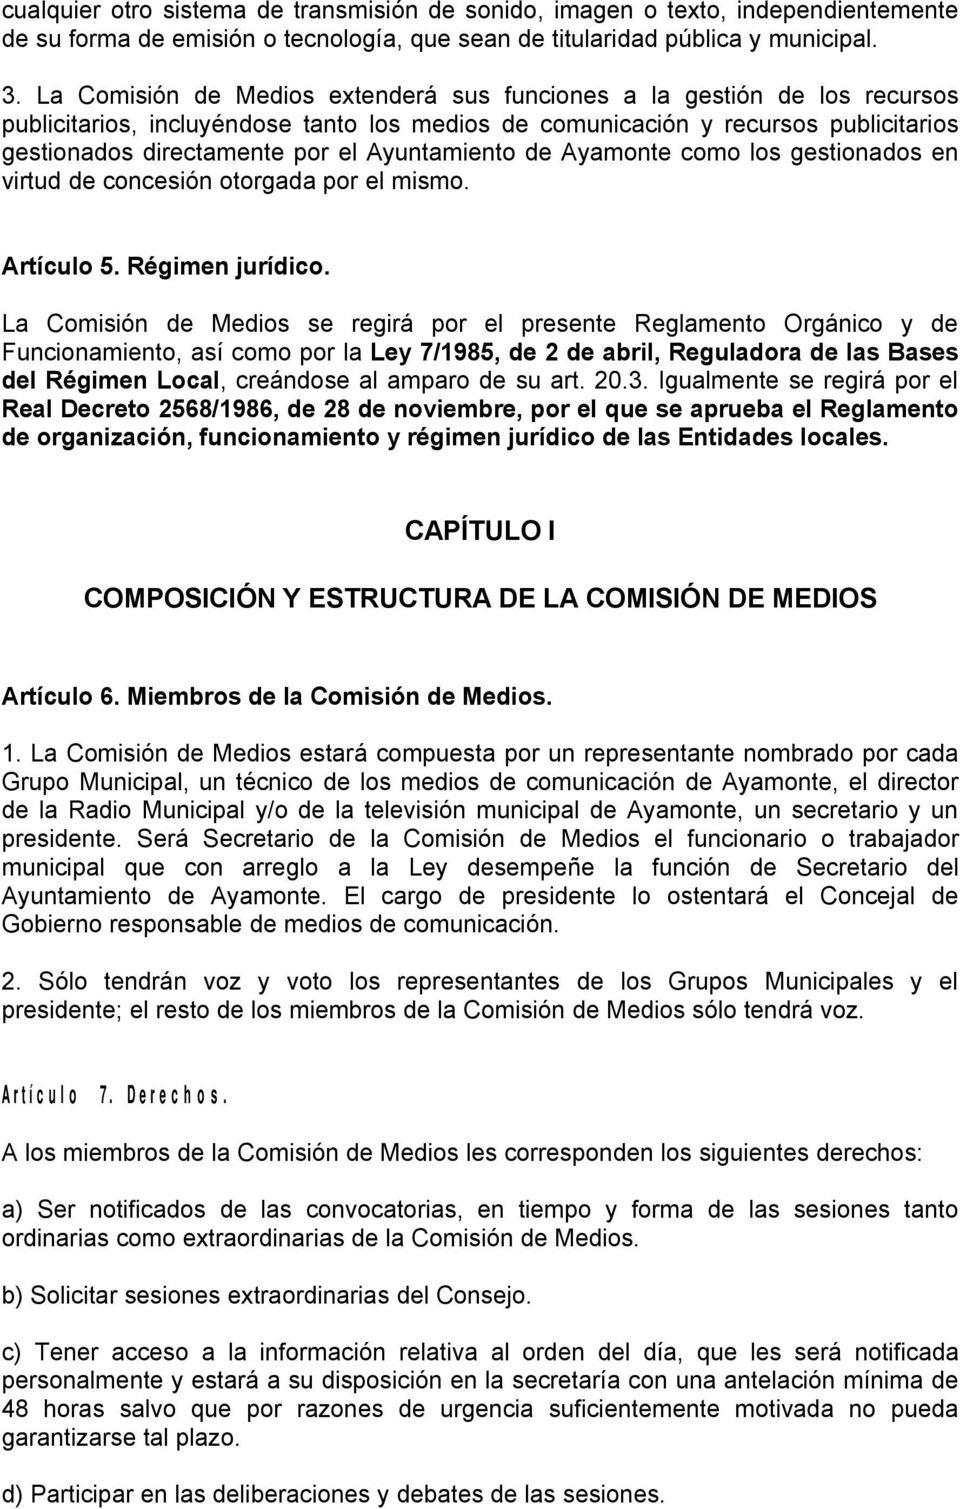 Ayuntamiento de Ayamonte como los gestionados en virtud de concesión otorgada por el mismo. Artículo 5. Régimen jurídico.